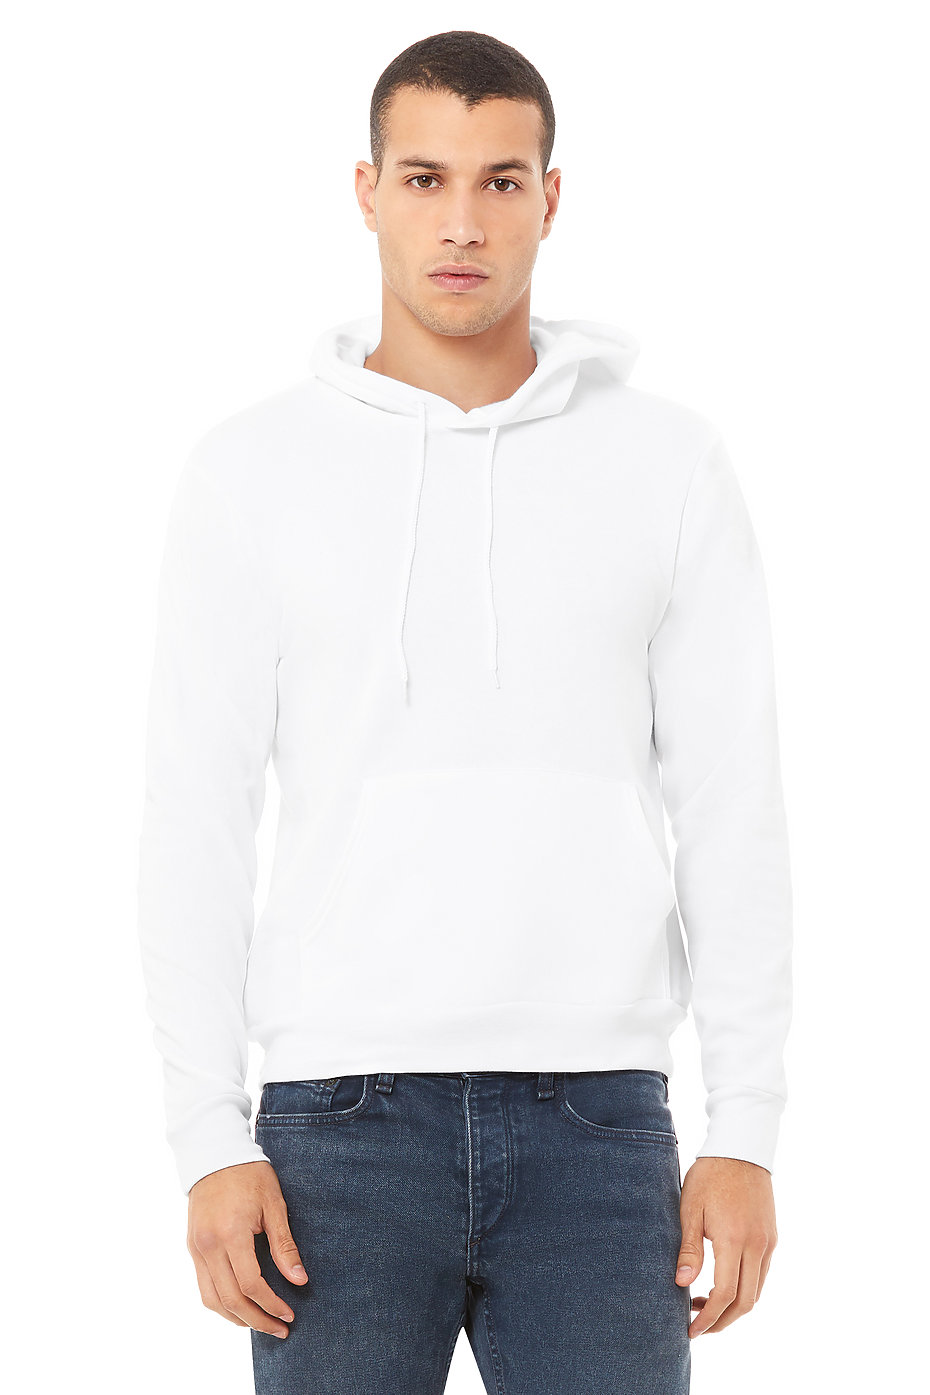 unisex sweatshirts wholesale